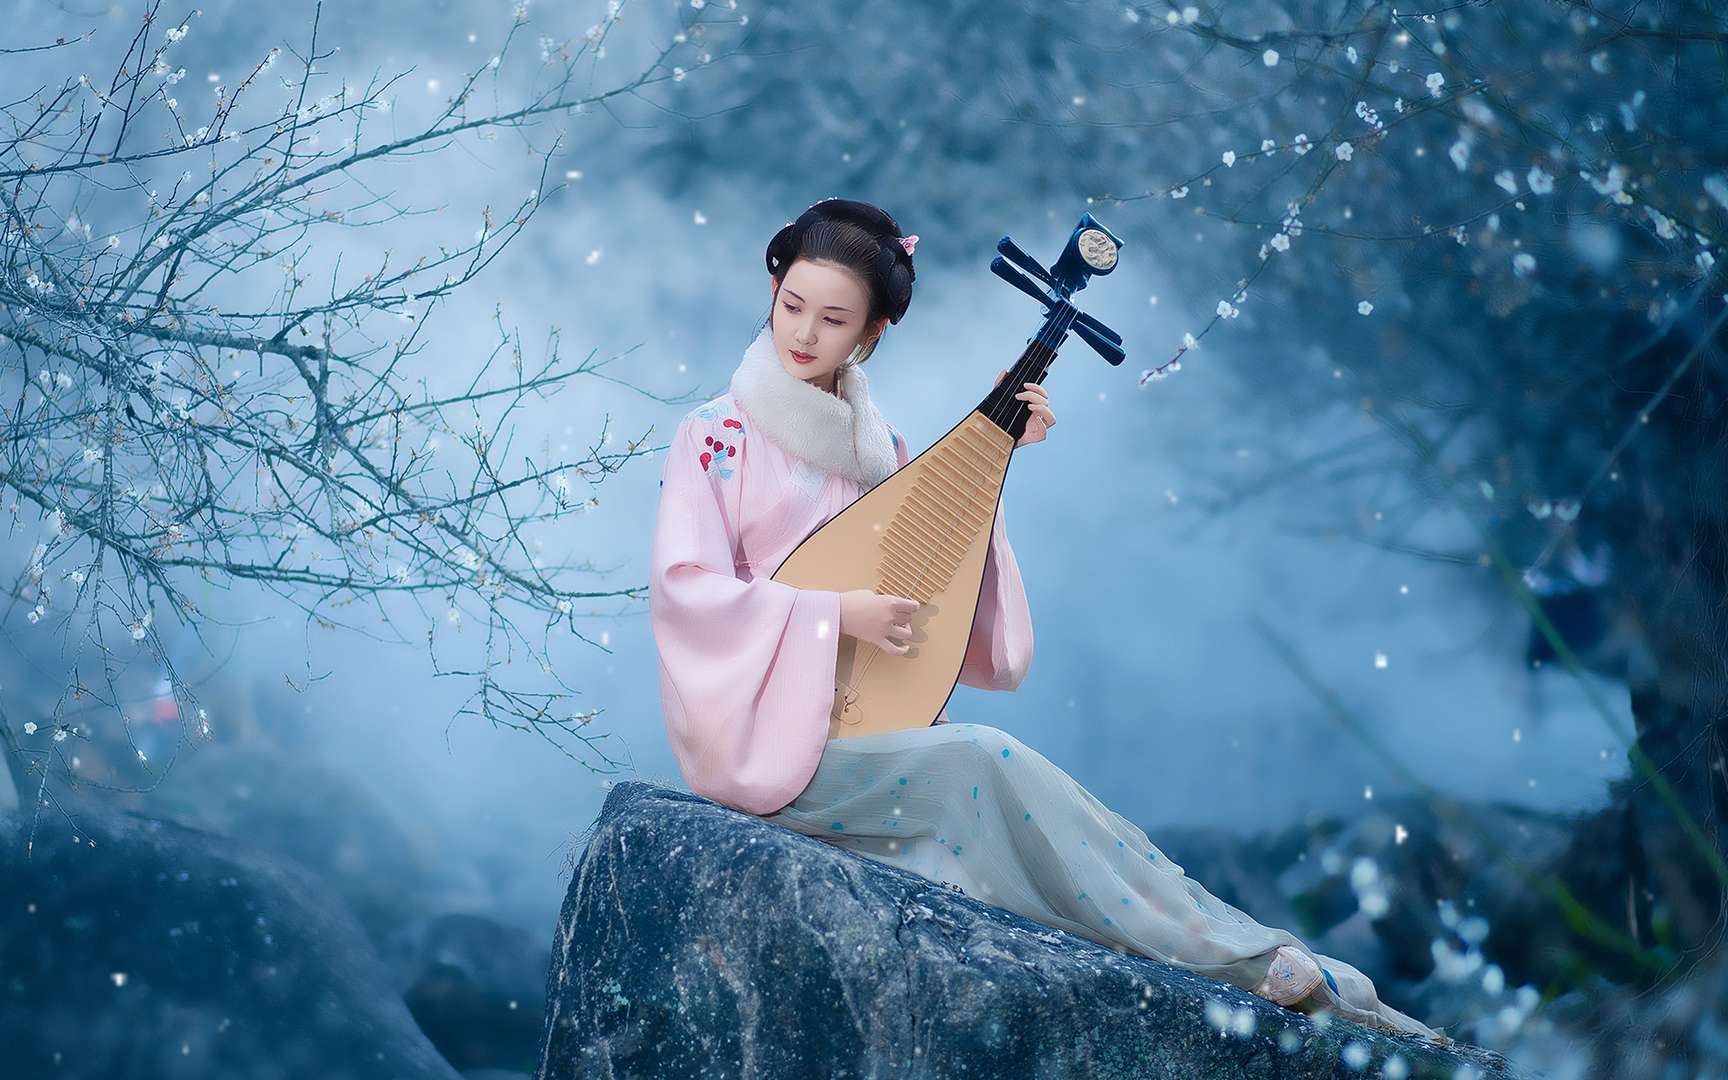 古装美女弹奏古筝-蓝牛仔影像-中国原创广告影像素材